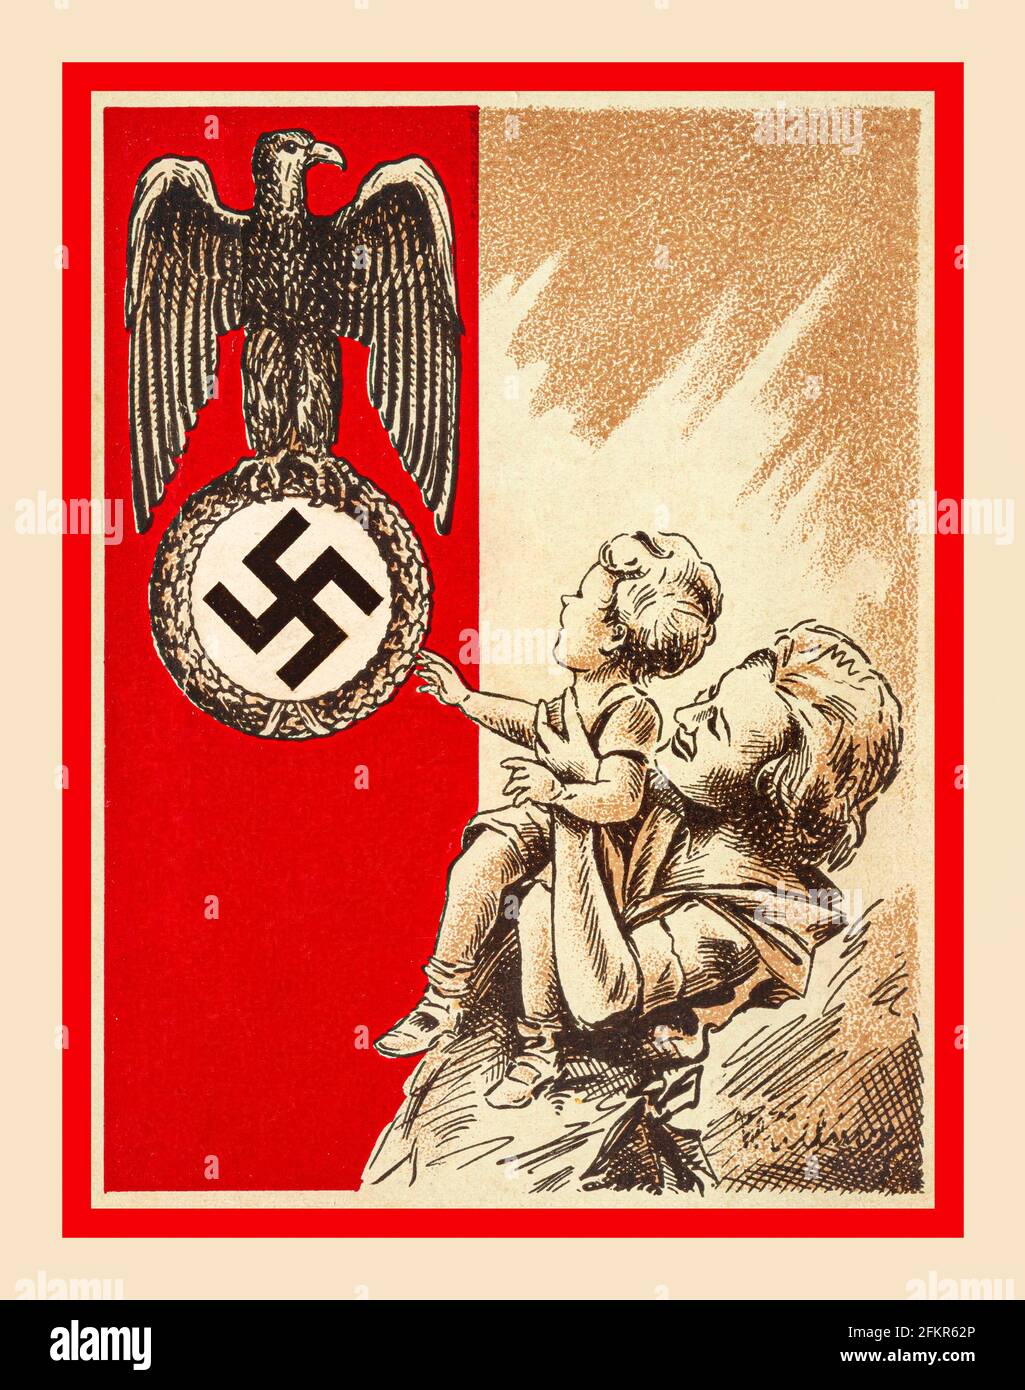 IMAGE DE LA FAMILLE NAZIE DE LA SWASTIKA 1939 propagande carte postale Allemagne nazie montrant une mère et un enfant avec l'aigle nazi de la Patrie et Swastika comme un symbole de gardien national à vénéré respecté et admiré... Banque D'Images